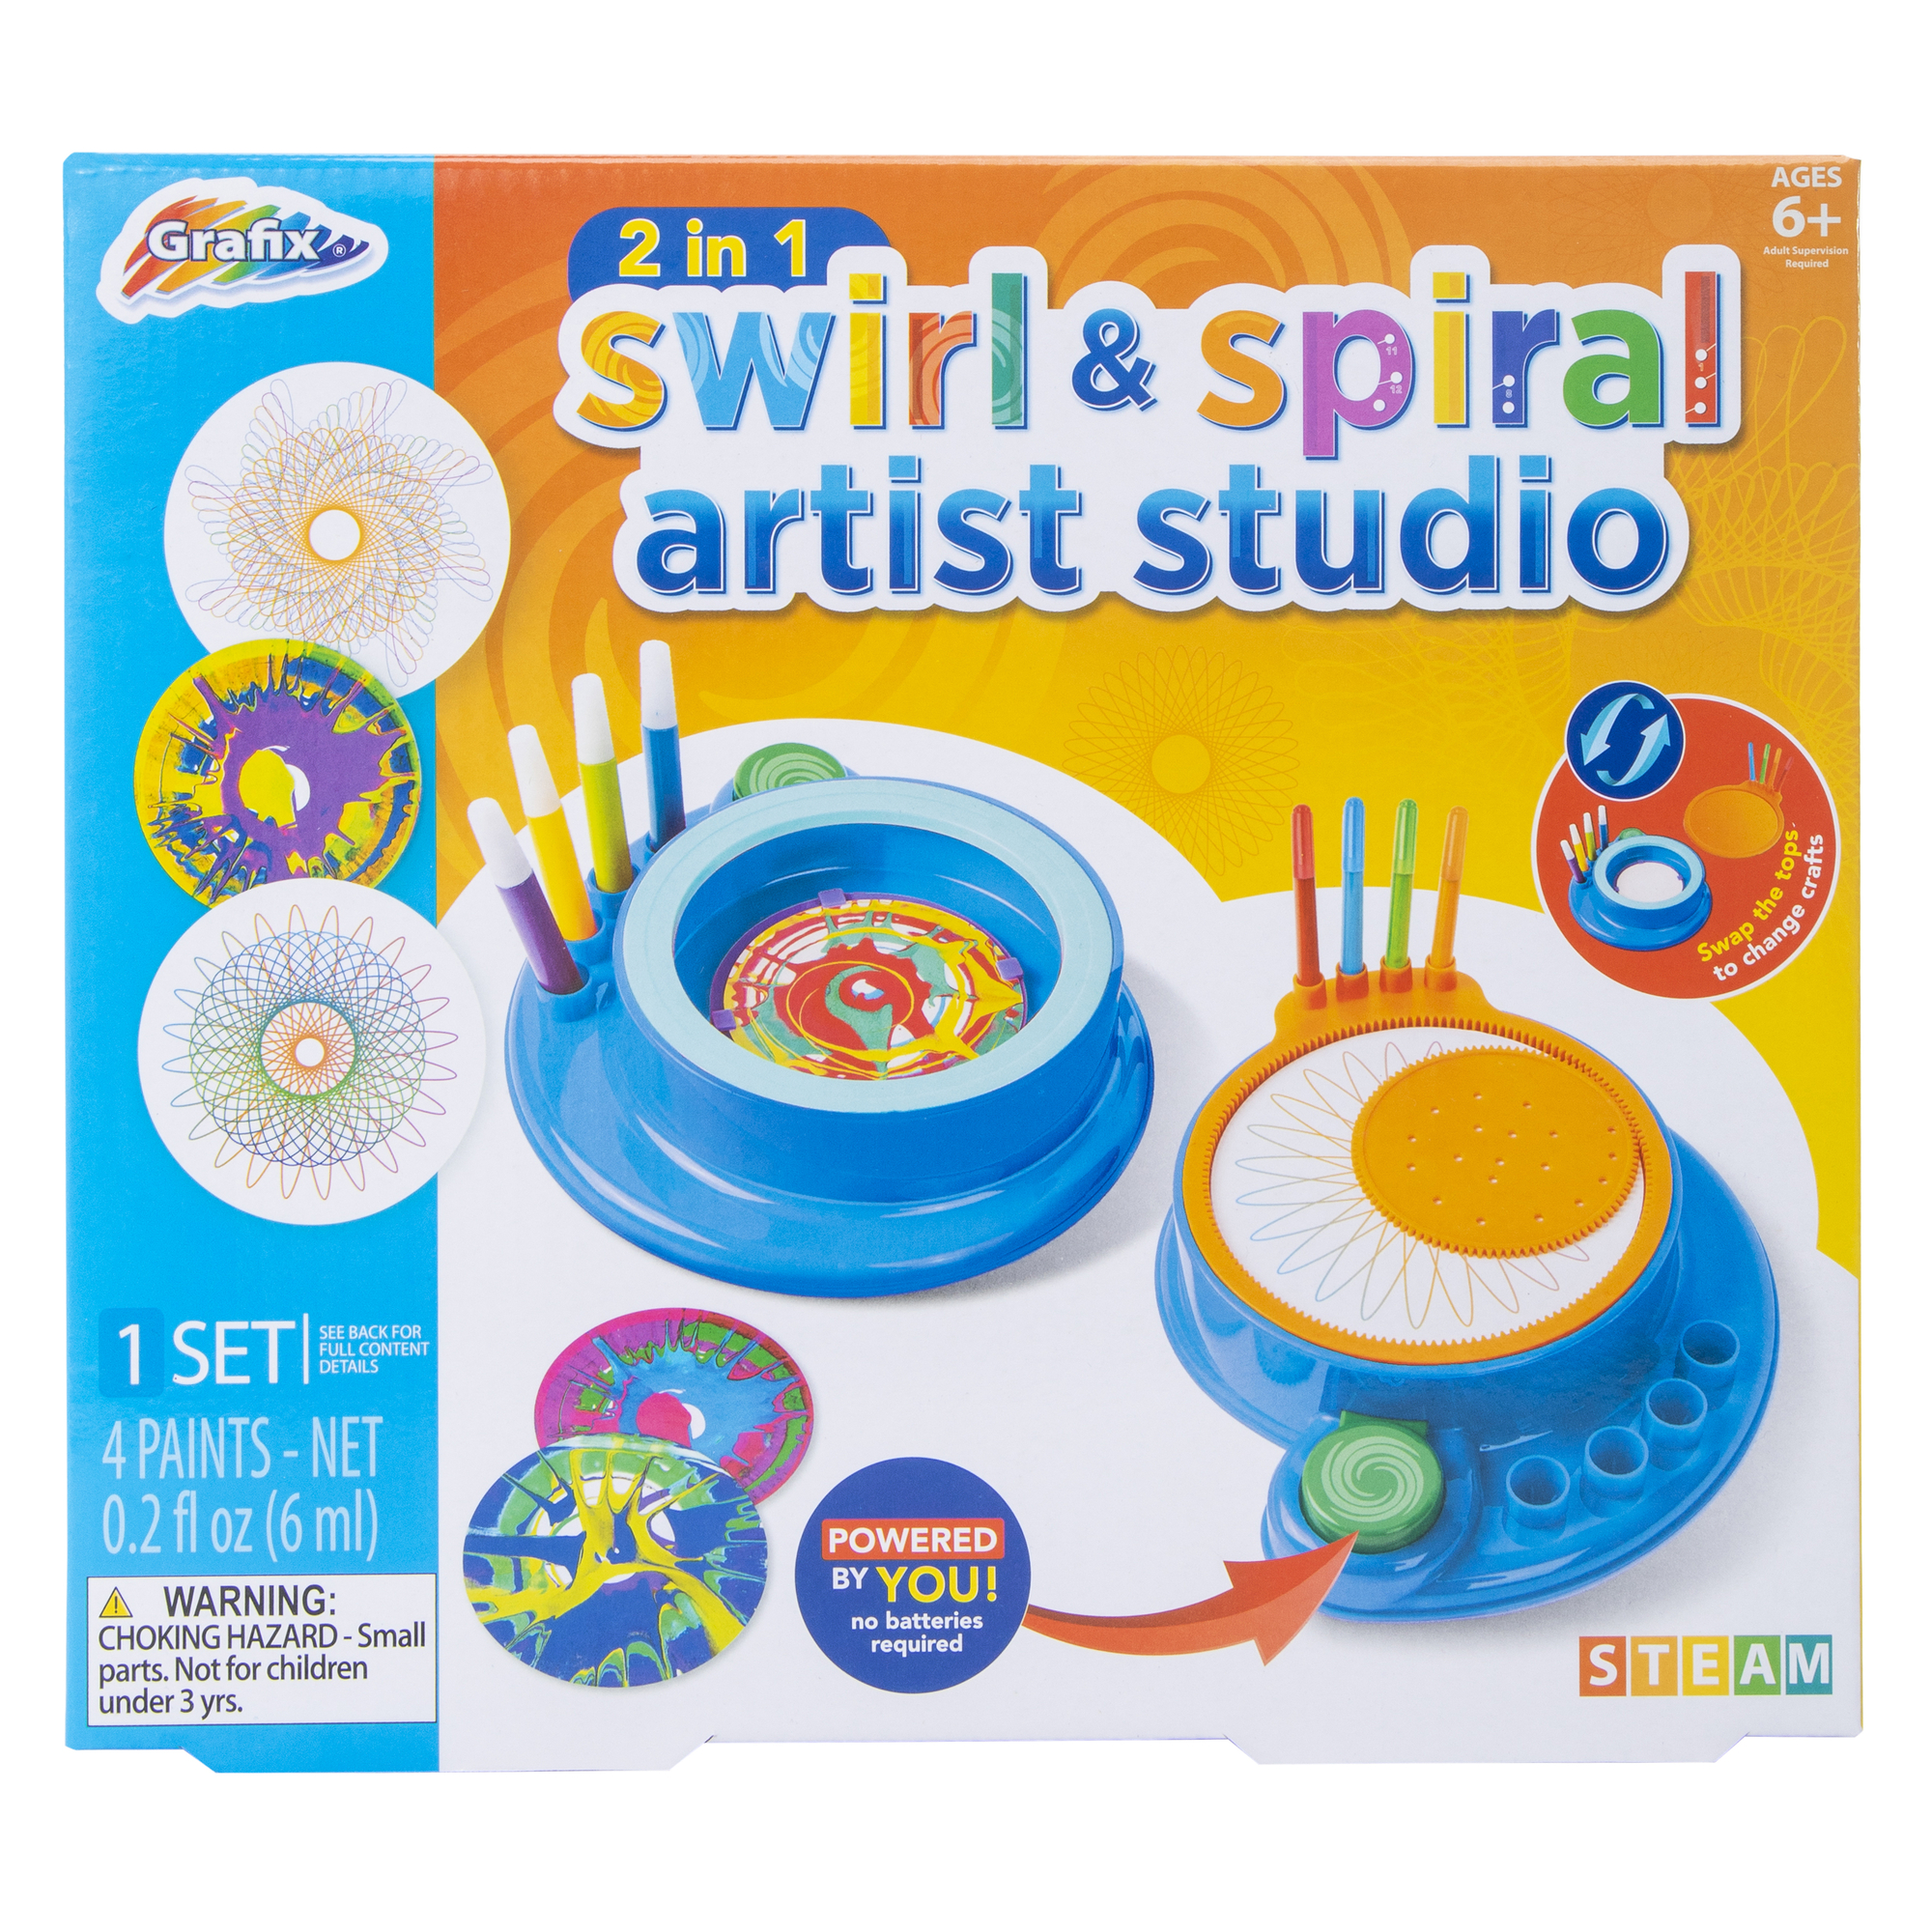 2-in-1 swirl & spiral artist studio